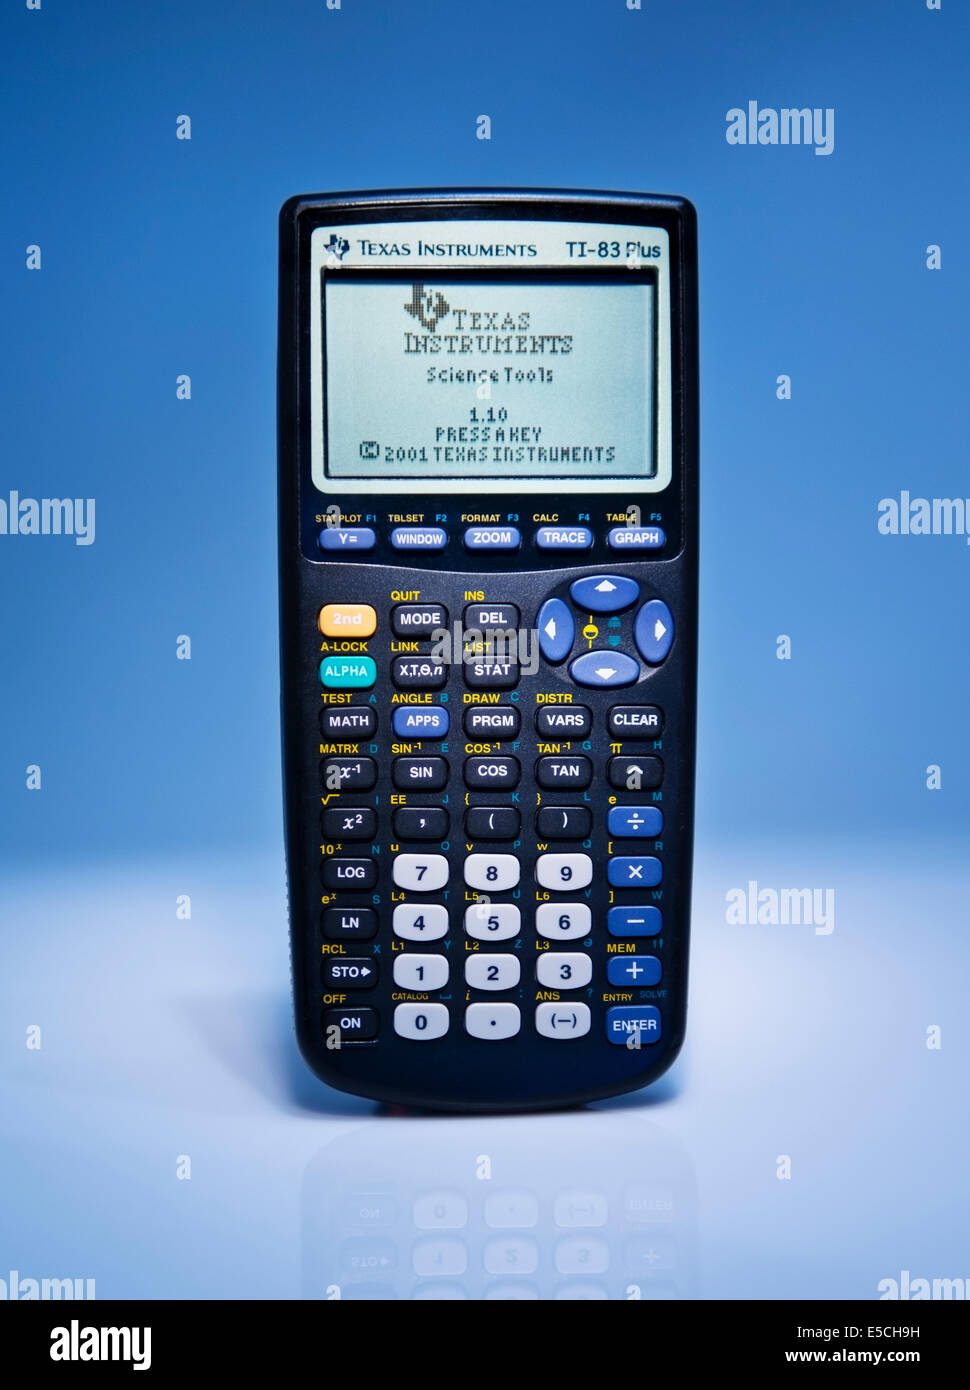 Vista frontale di dettaglio di un Texas Instruments Ti-83 Plus calcolatrice scientifica. Foto Stock